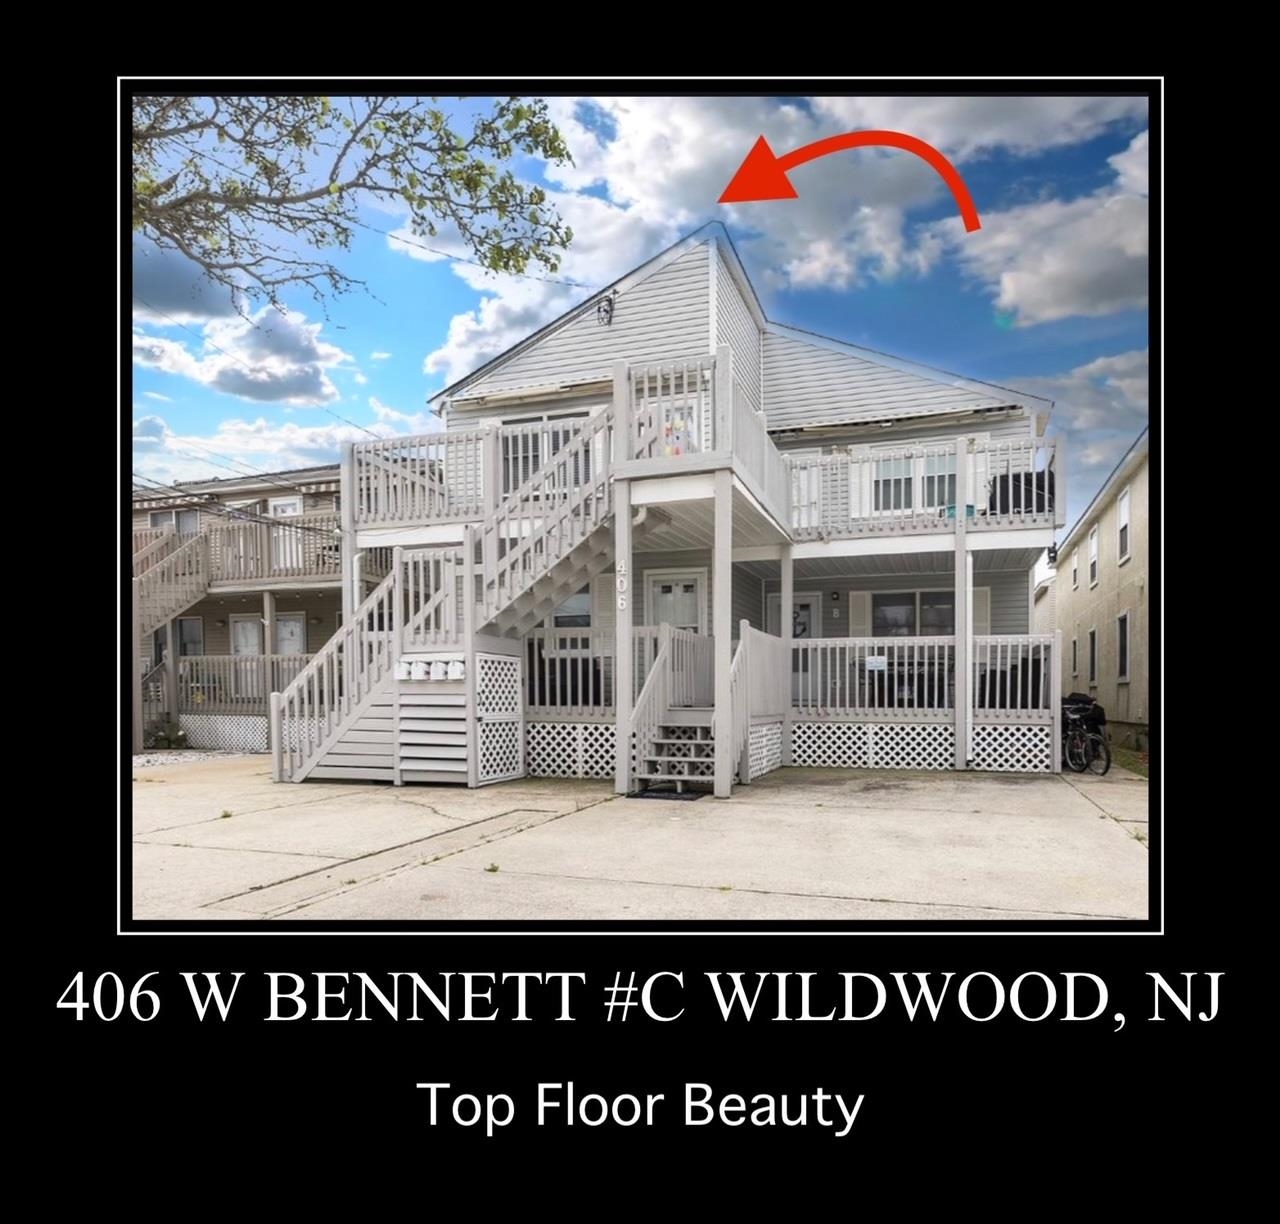 406 W Bennett Avenue - Wildwood